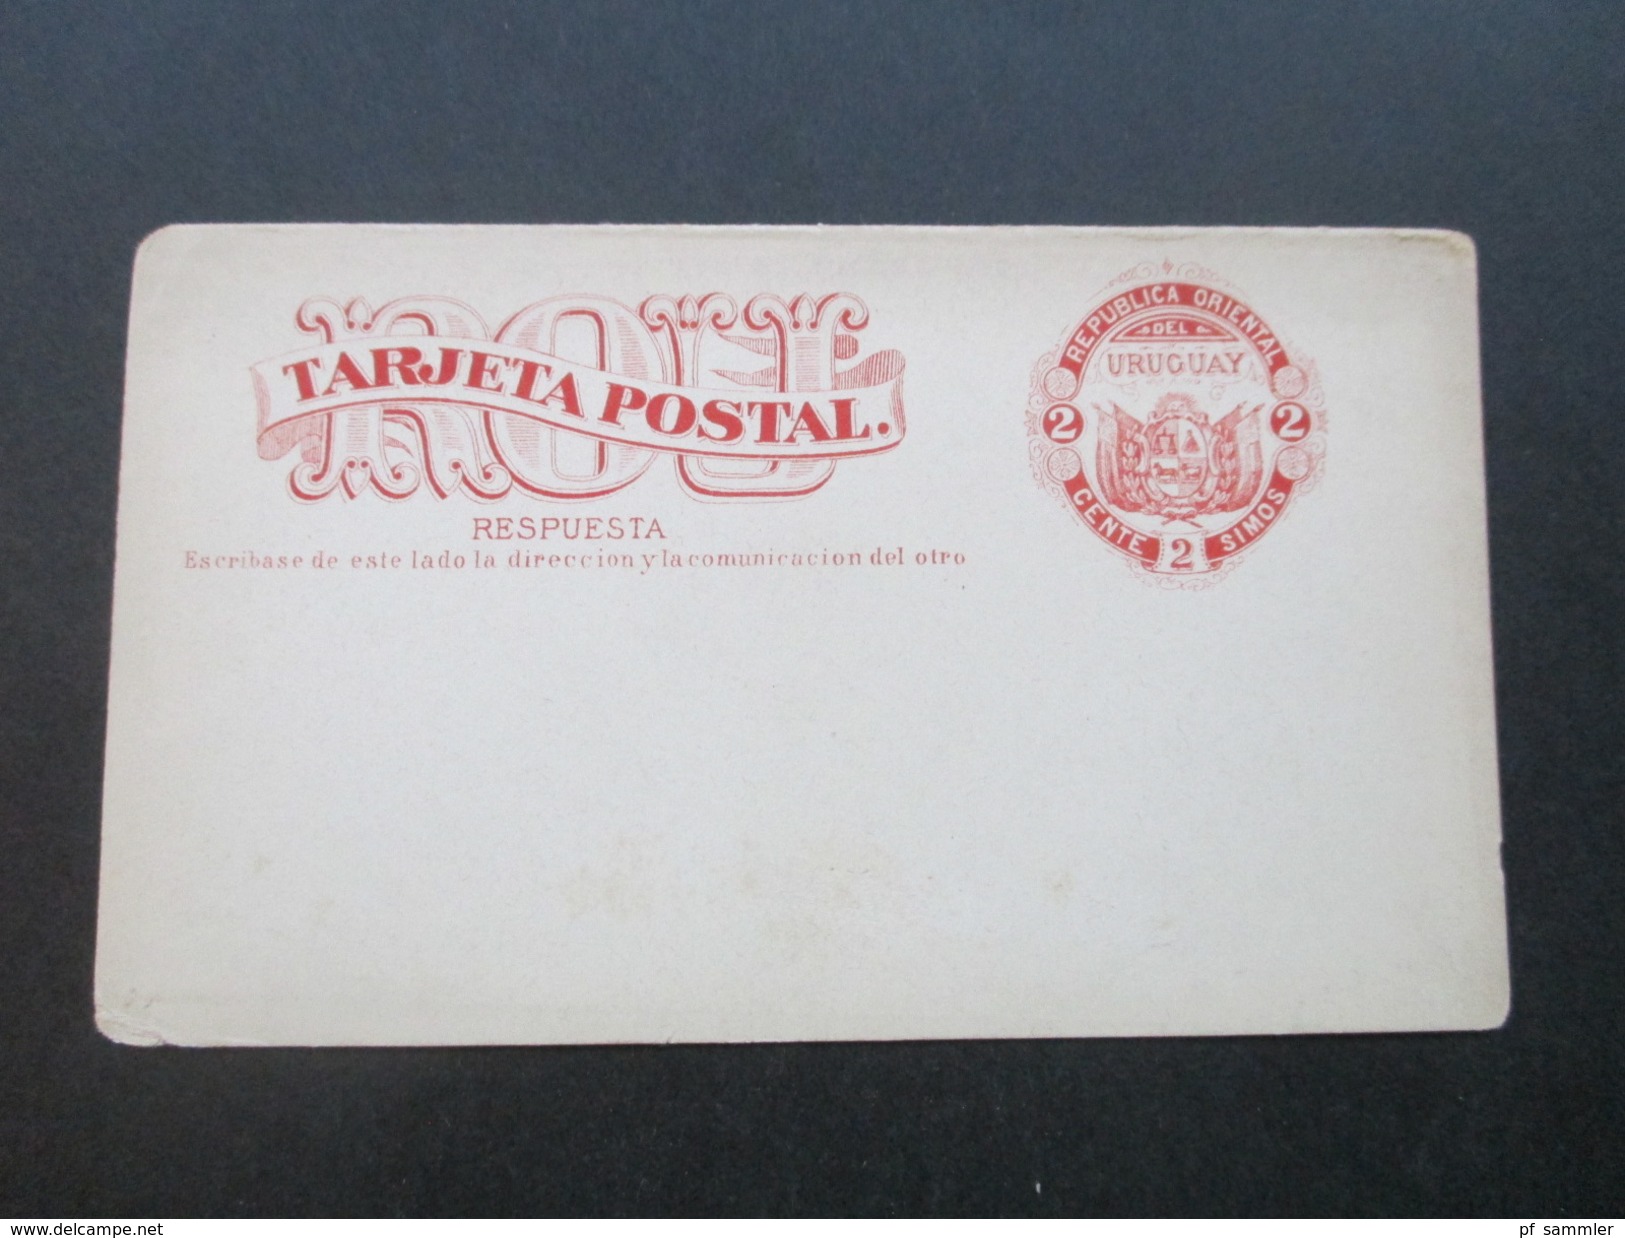 Uruguay Ganzsache / Doppelkarte 2a Serie 1880. Tarjeta Postal. Respuesta. Ungebraucht / Leicht Verschnitten! - Uruguay